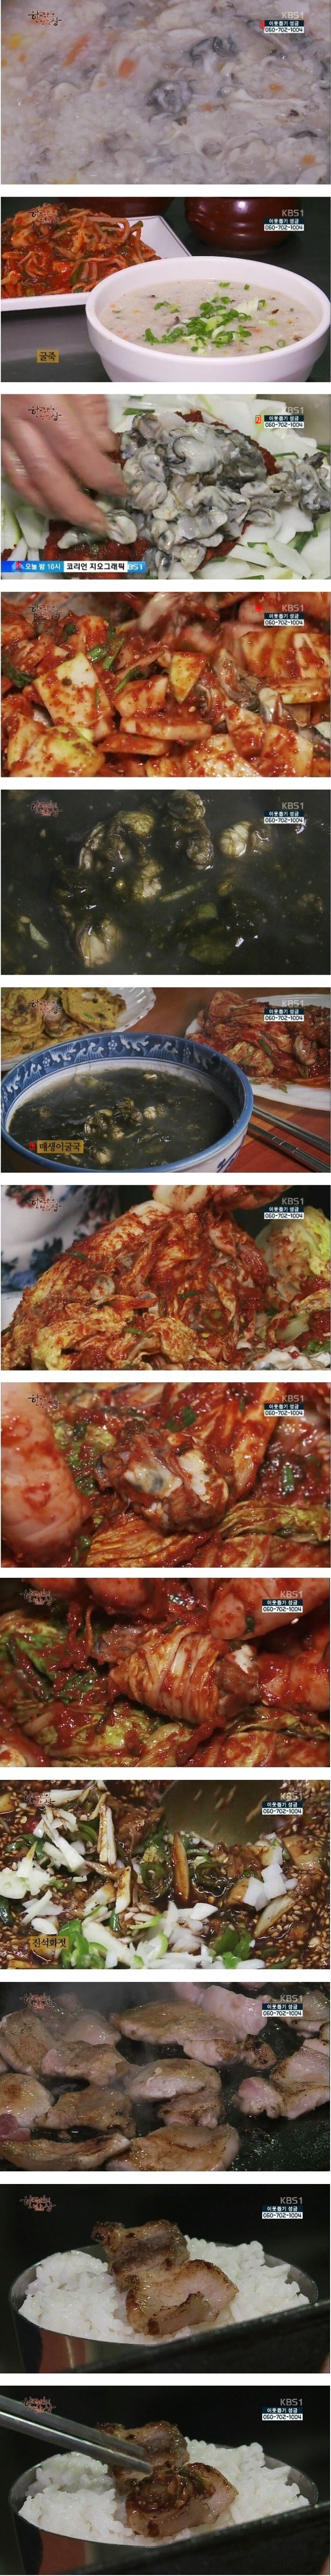 한국인의 밥상에서 최고로 호불호 갈렸던 밥상